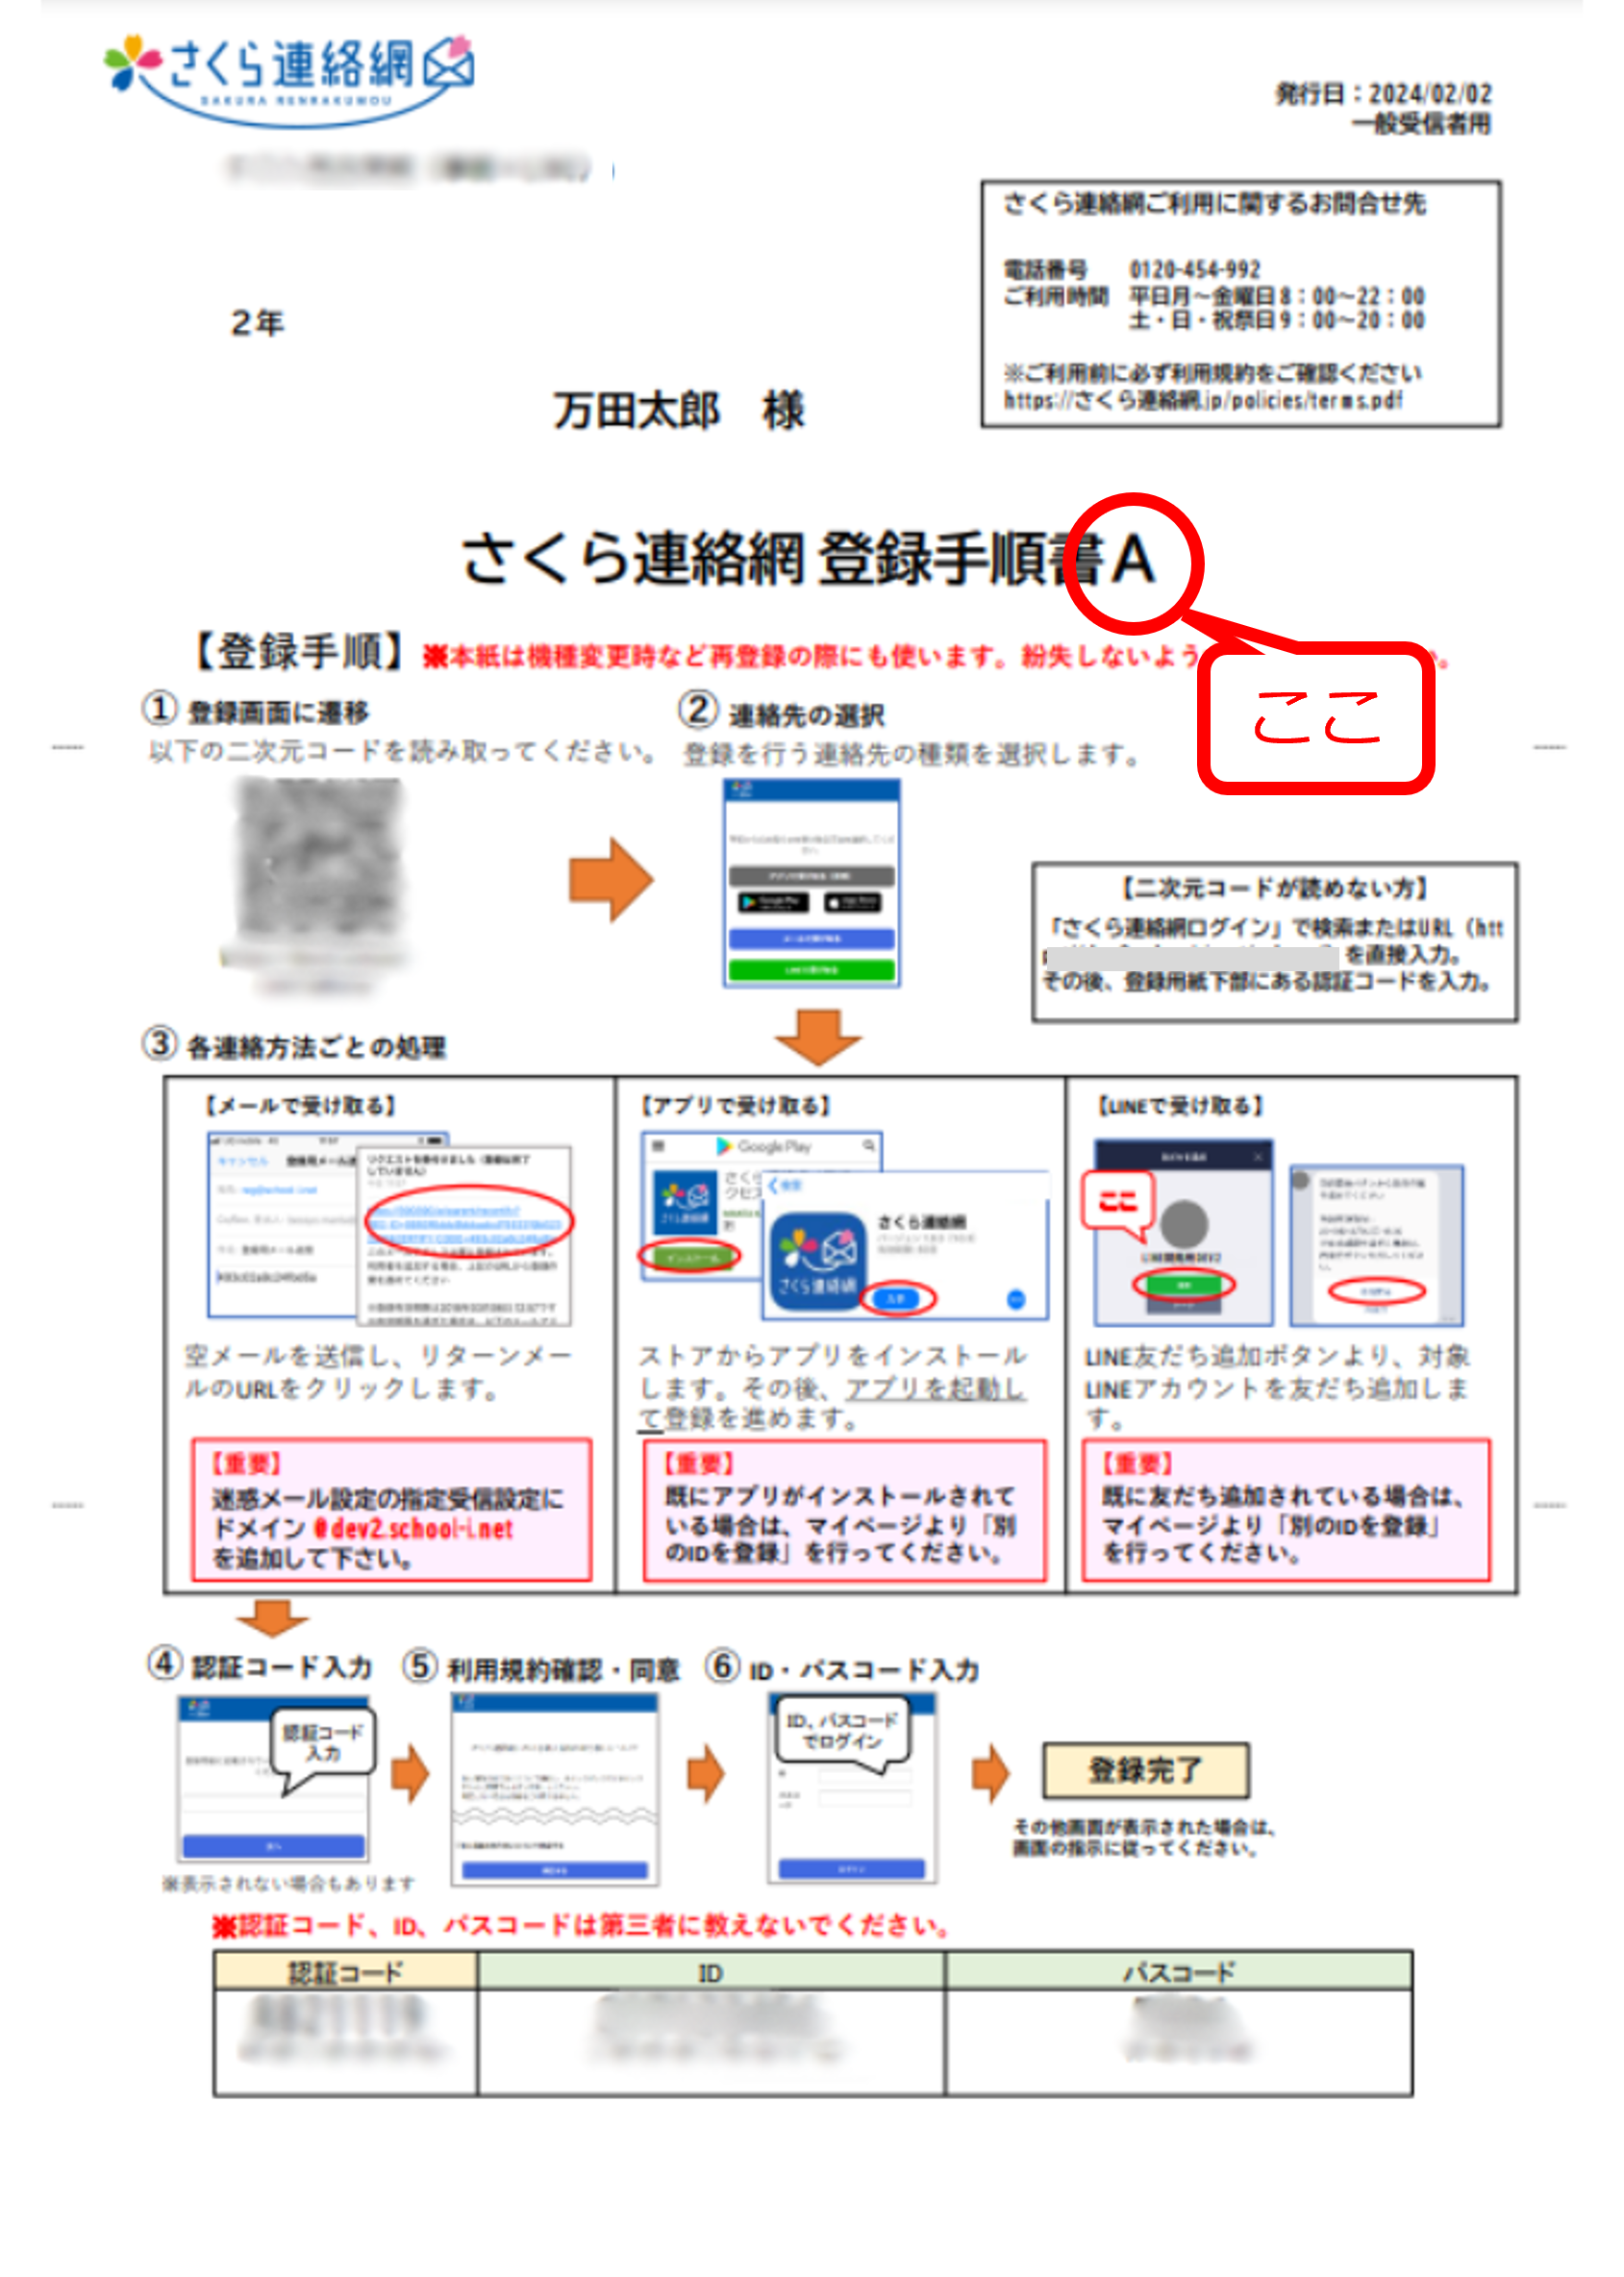 ご利用者様用マニュアル | さくら連絡網.jp | 学校に特化したメール連絡網